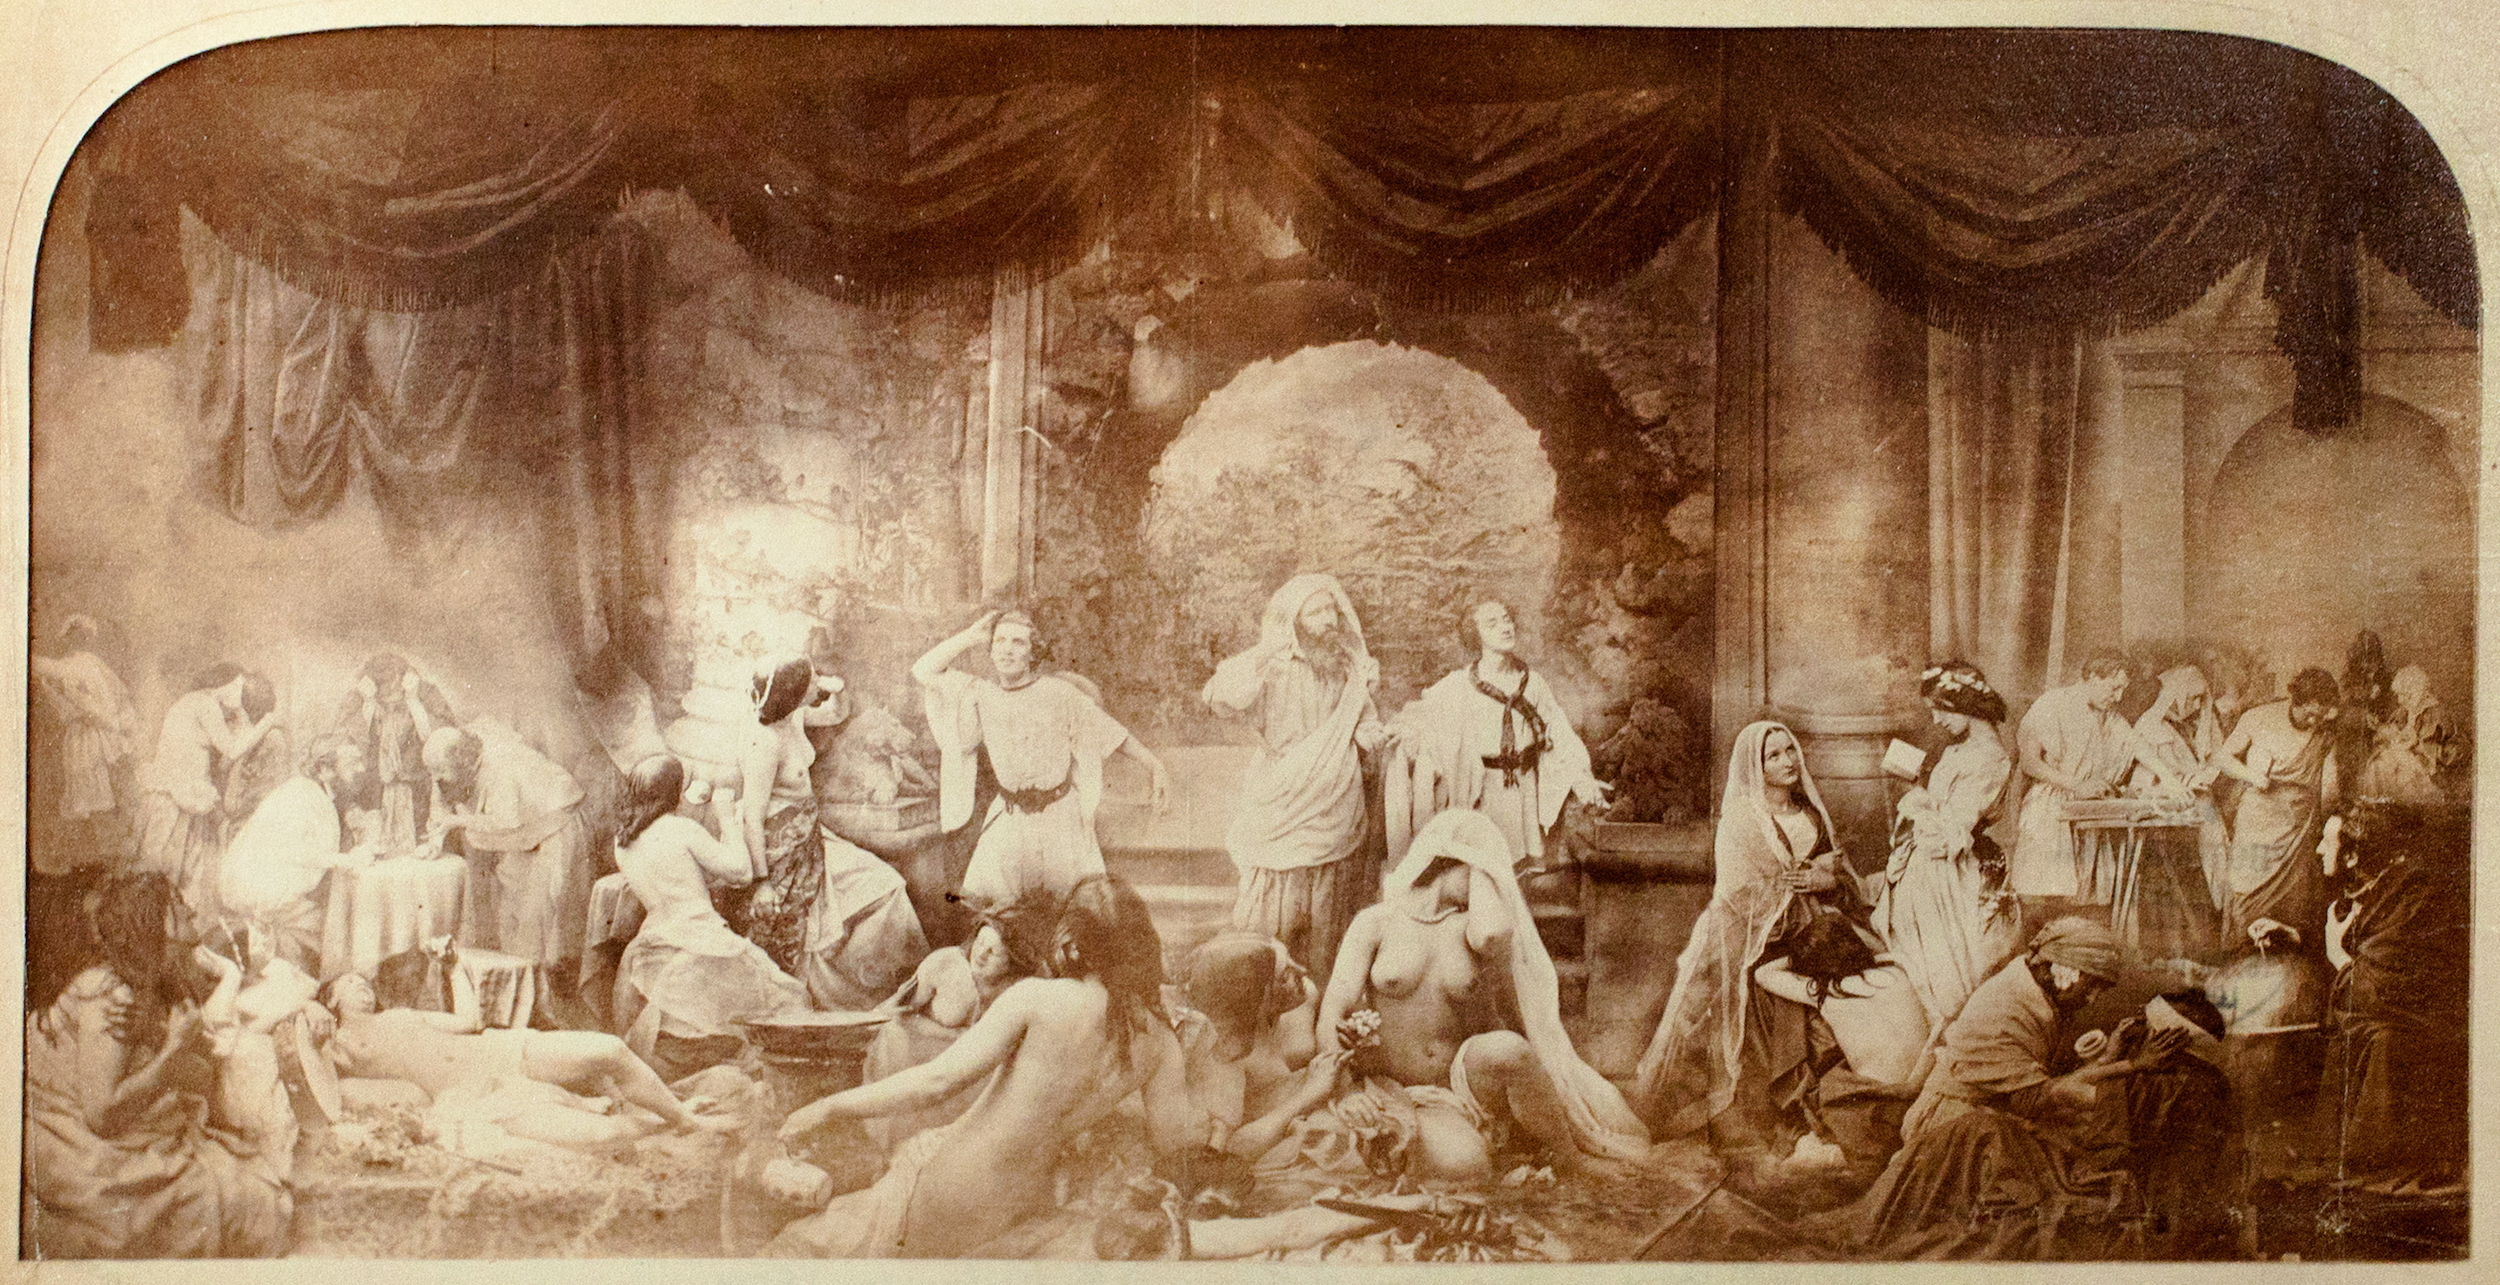 Imagerie Composée 1850-1935 – Le Début de l’Histoire du photomontage  by Oscar Gustave Rejlander - 1858 - 41 x 79 cm 